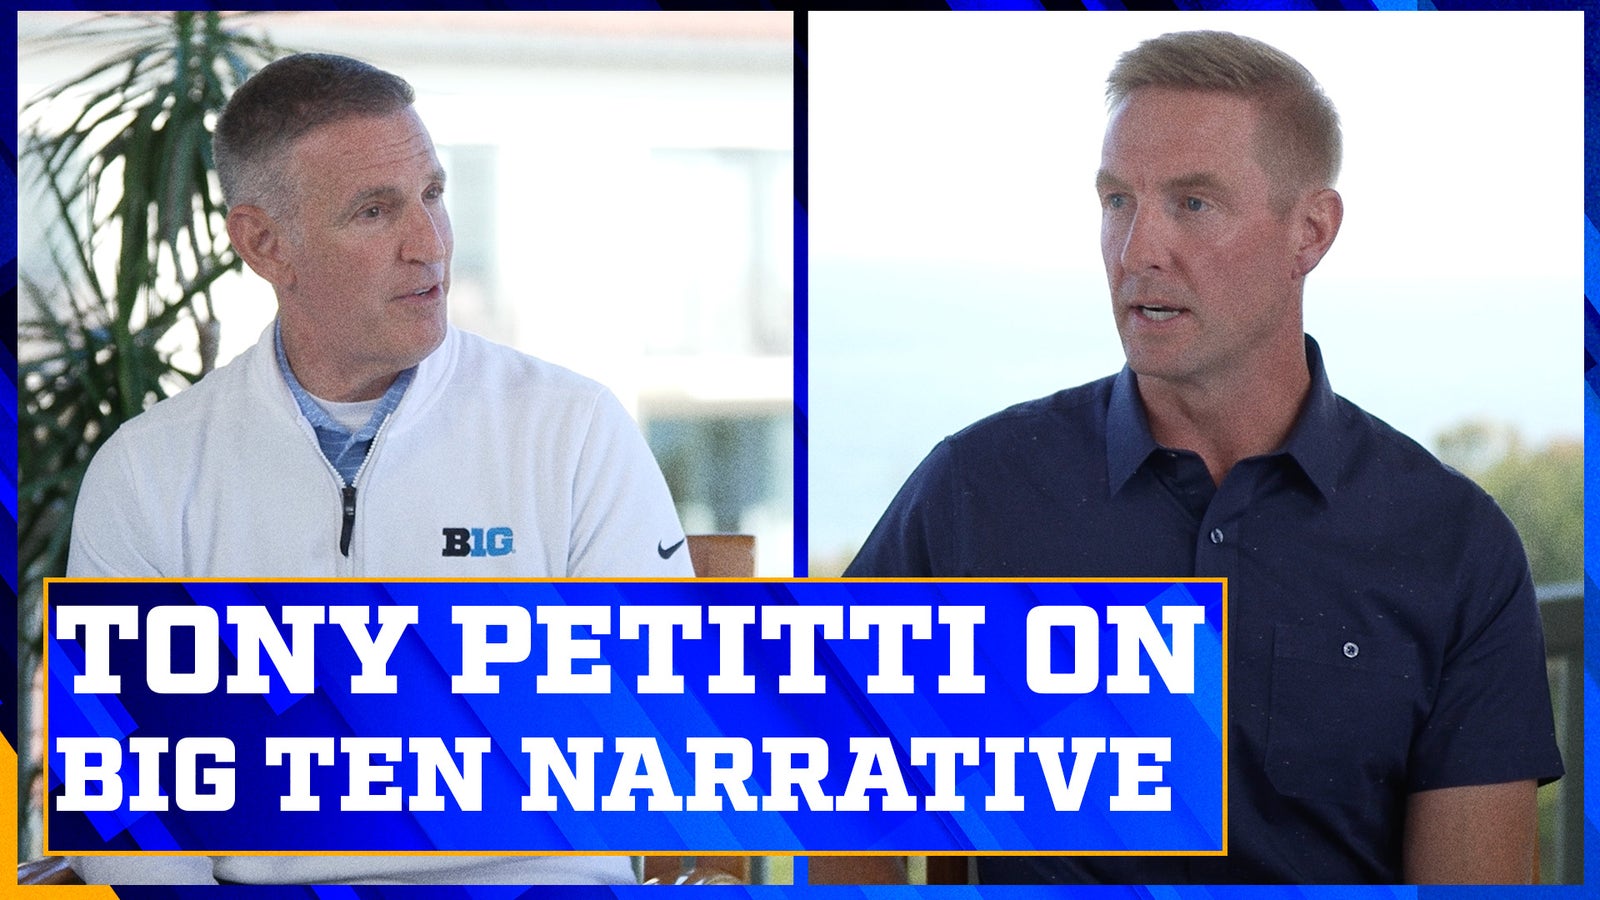 Tony Petitti speaks on the Big Ten narrative for the 2023 season